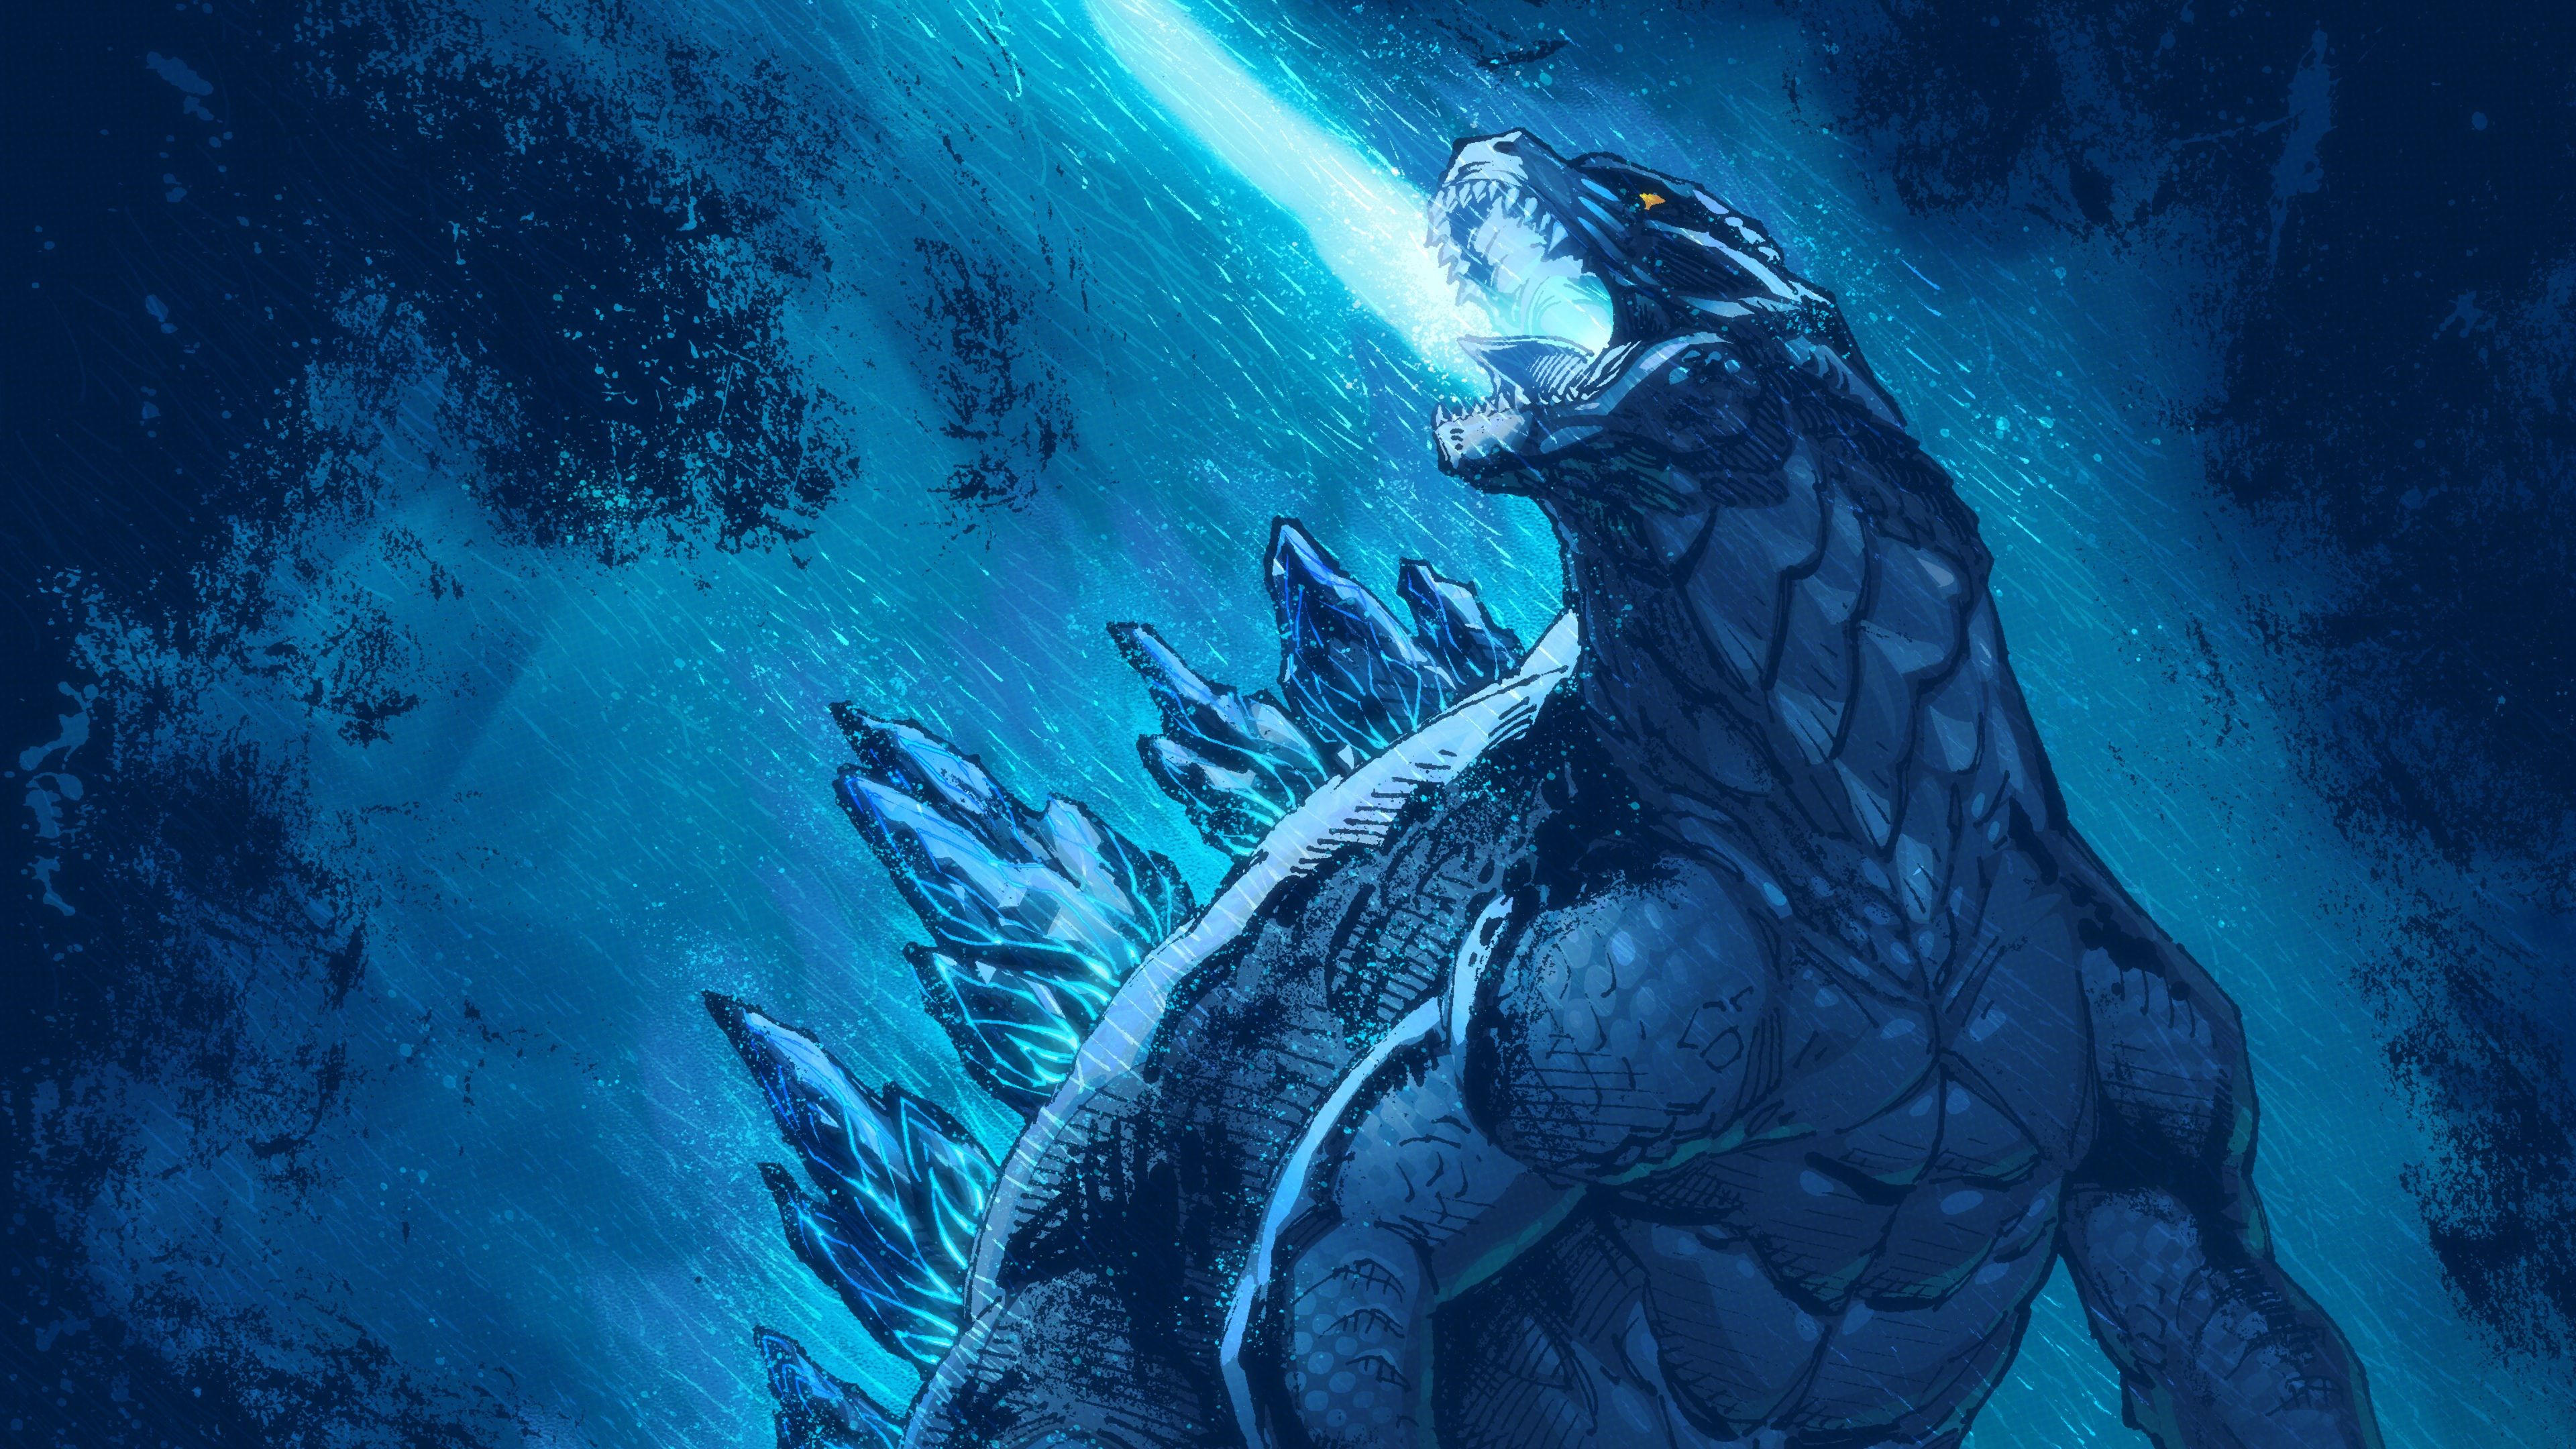 New Godzilla vs Kong Wallpaper 4K Android क लए APK डउनलड कर